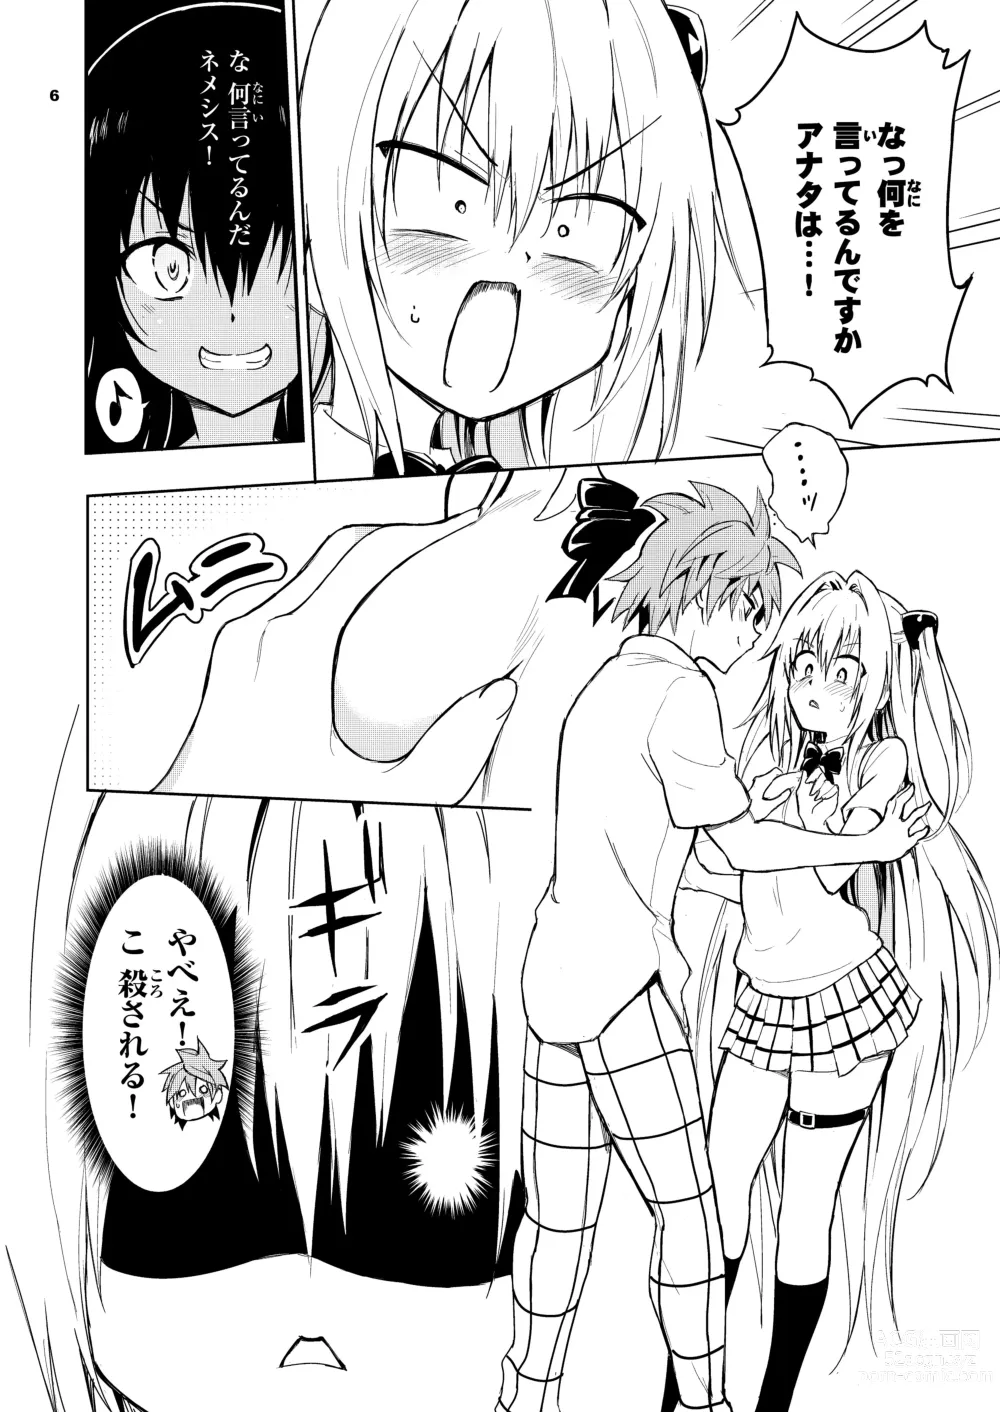 Page 6 of doujinshi Ecchii no wa Kirai desu ka?